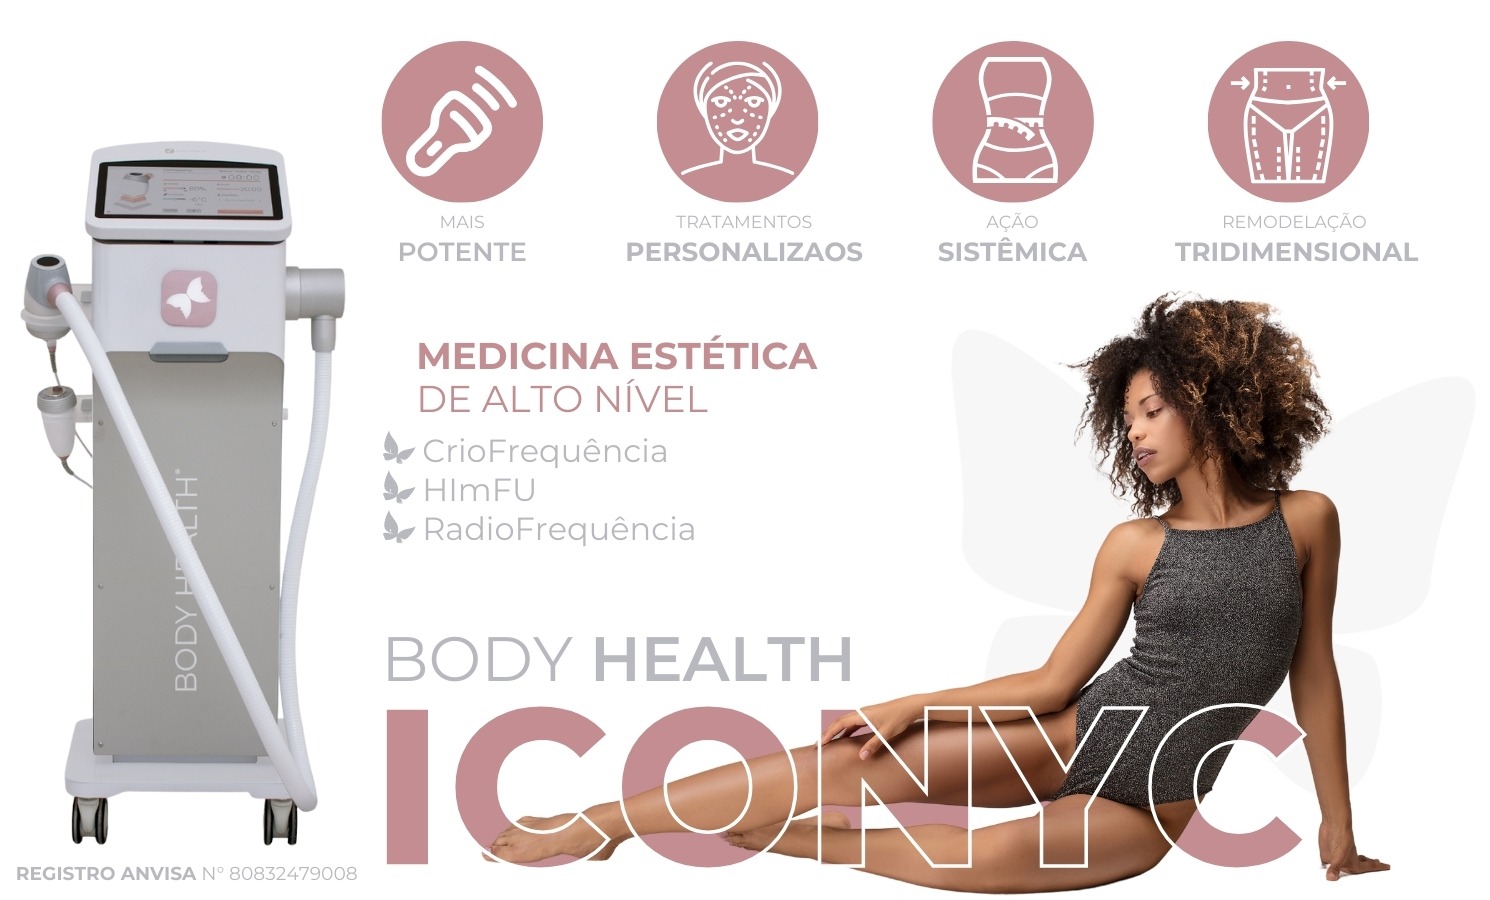 banner de apresentação - ICONYC Body Health Aparelho de Criofrequência, HImFU e Radiofrequência - Contourline